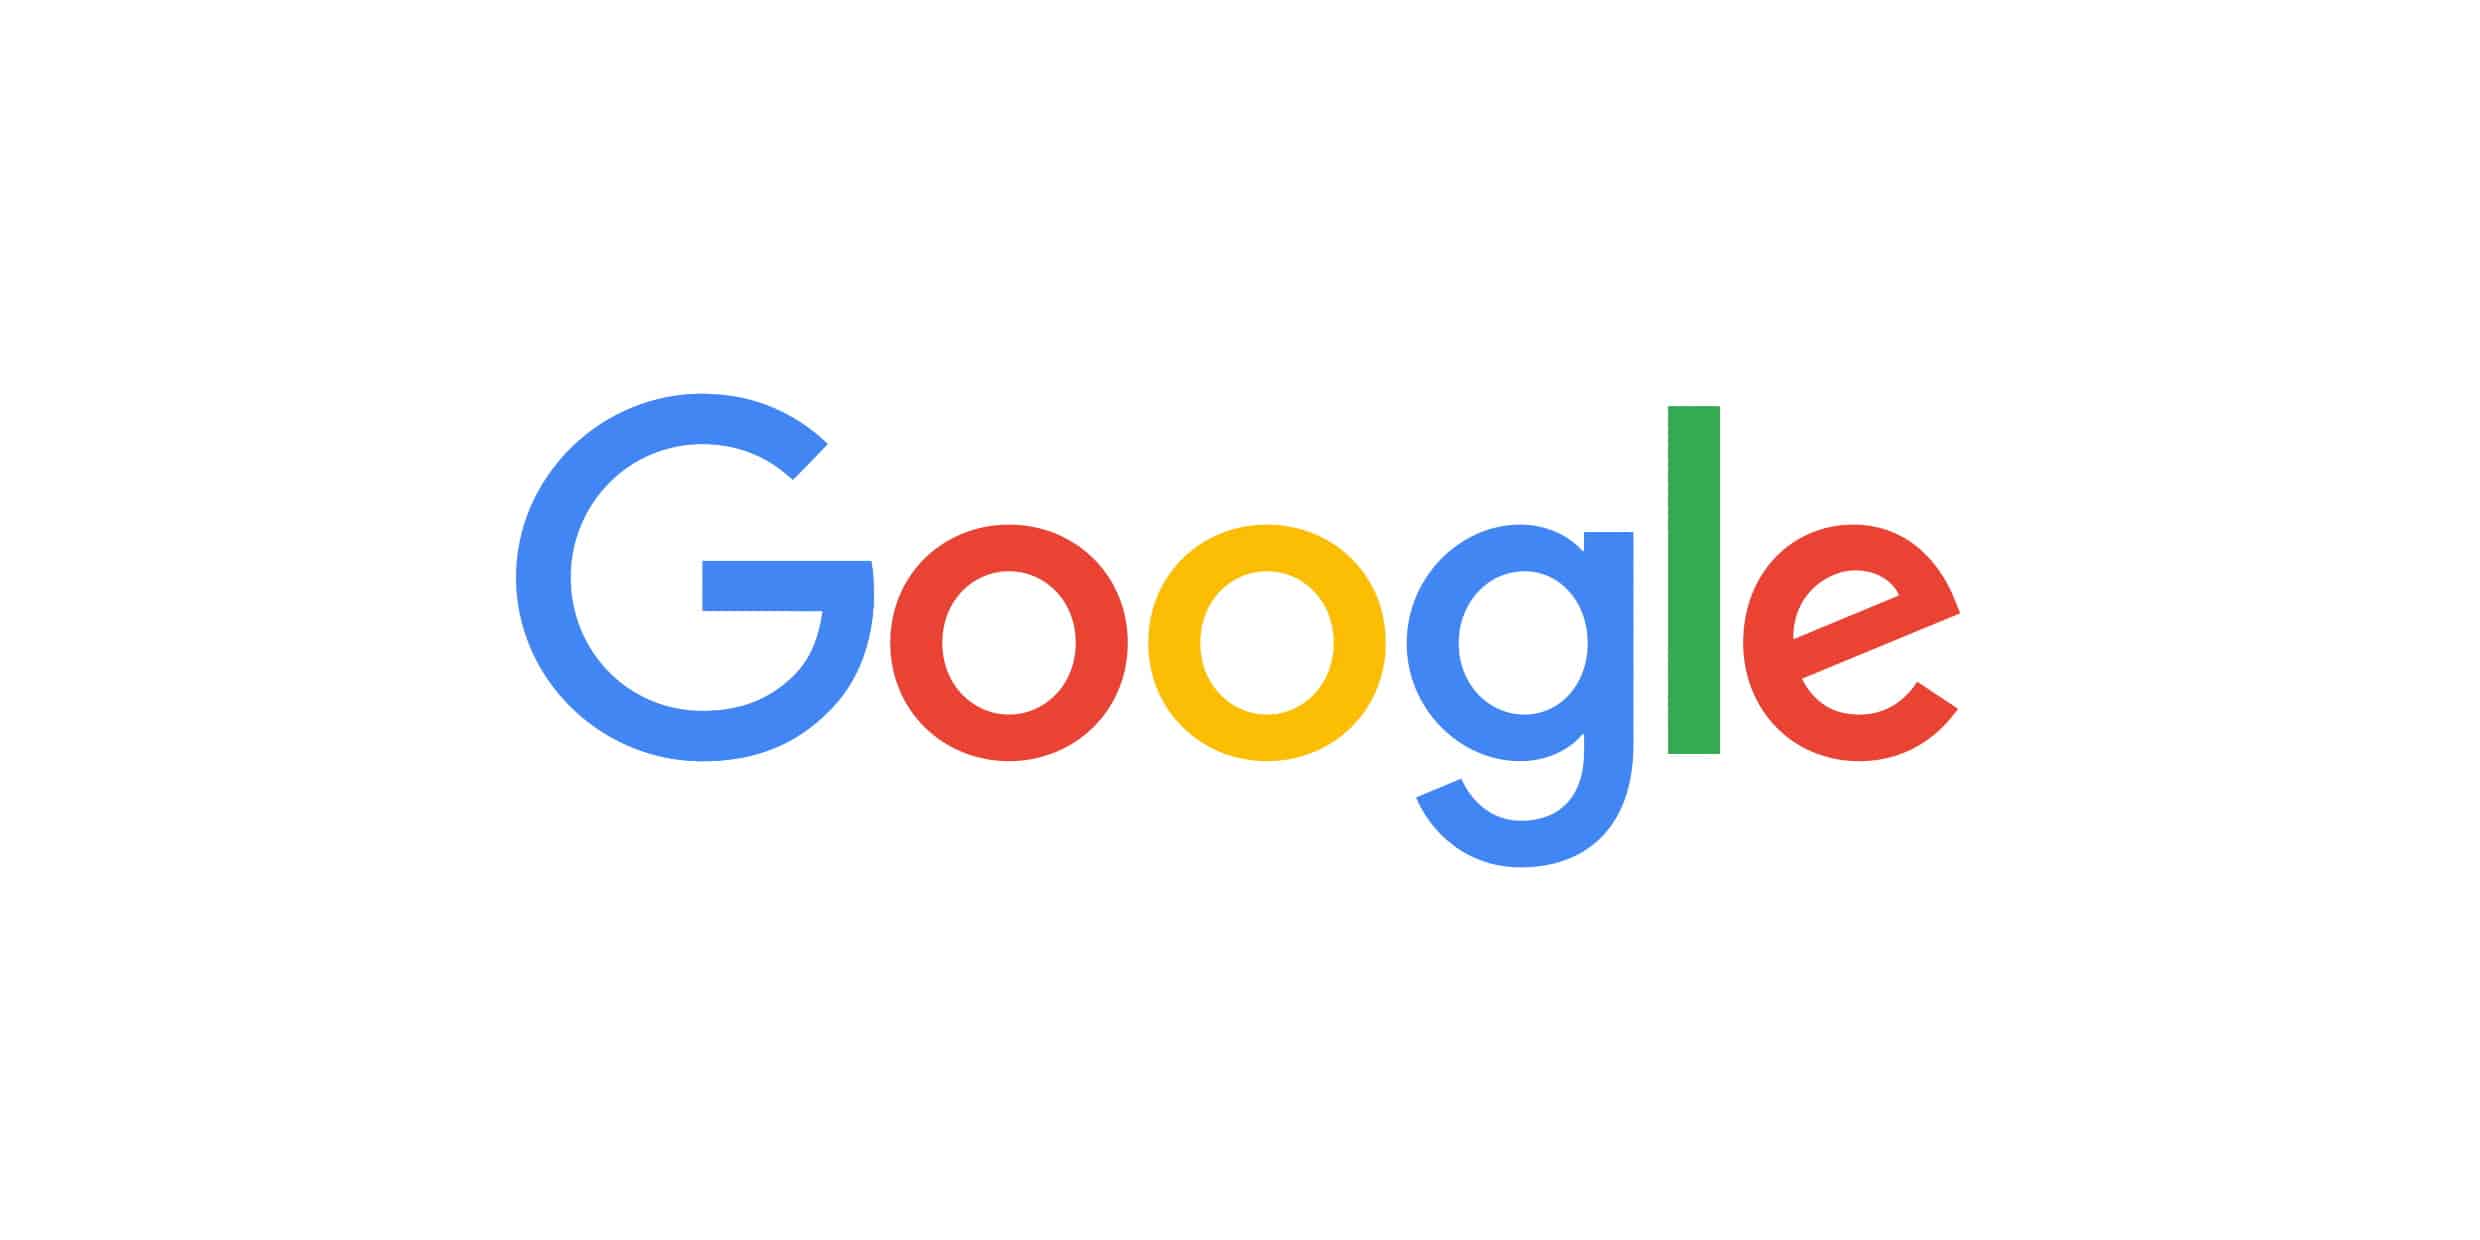 Desde 2014 o Google avisa usuários sobre segurança dos sites